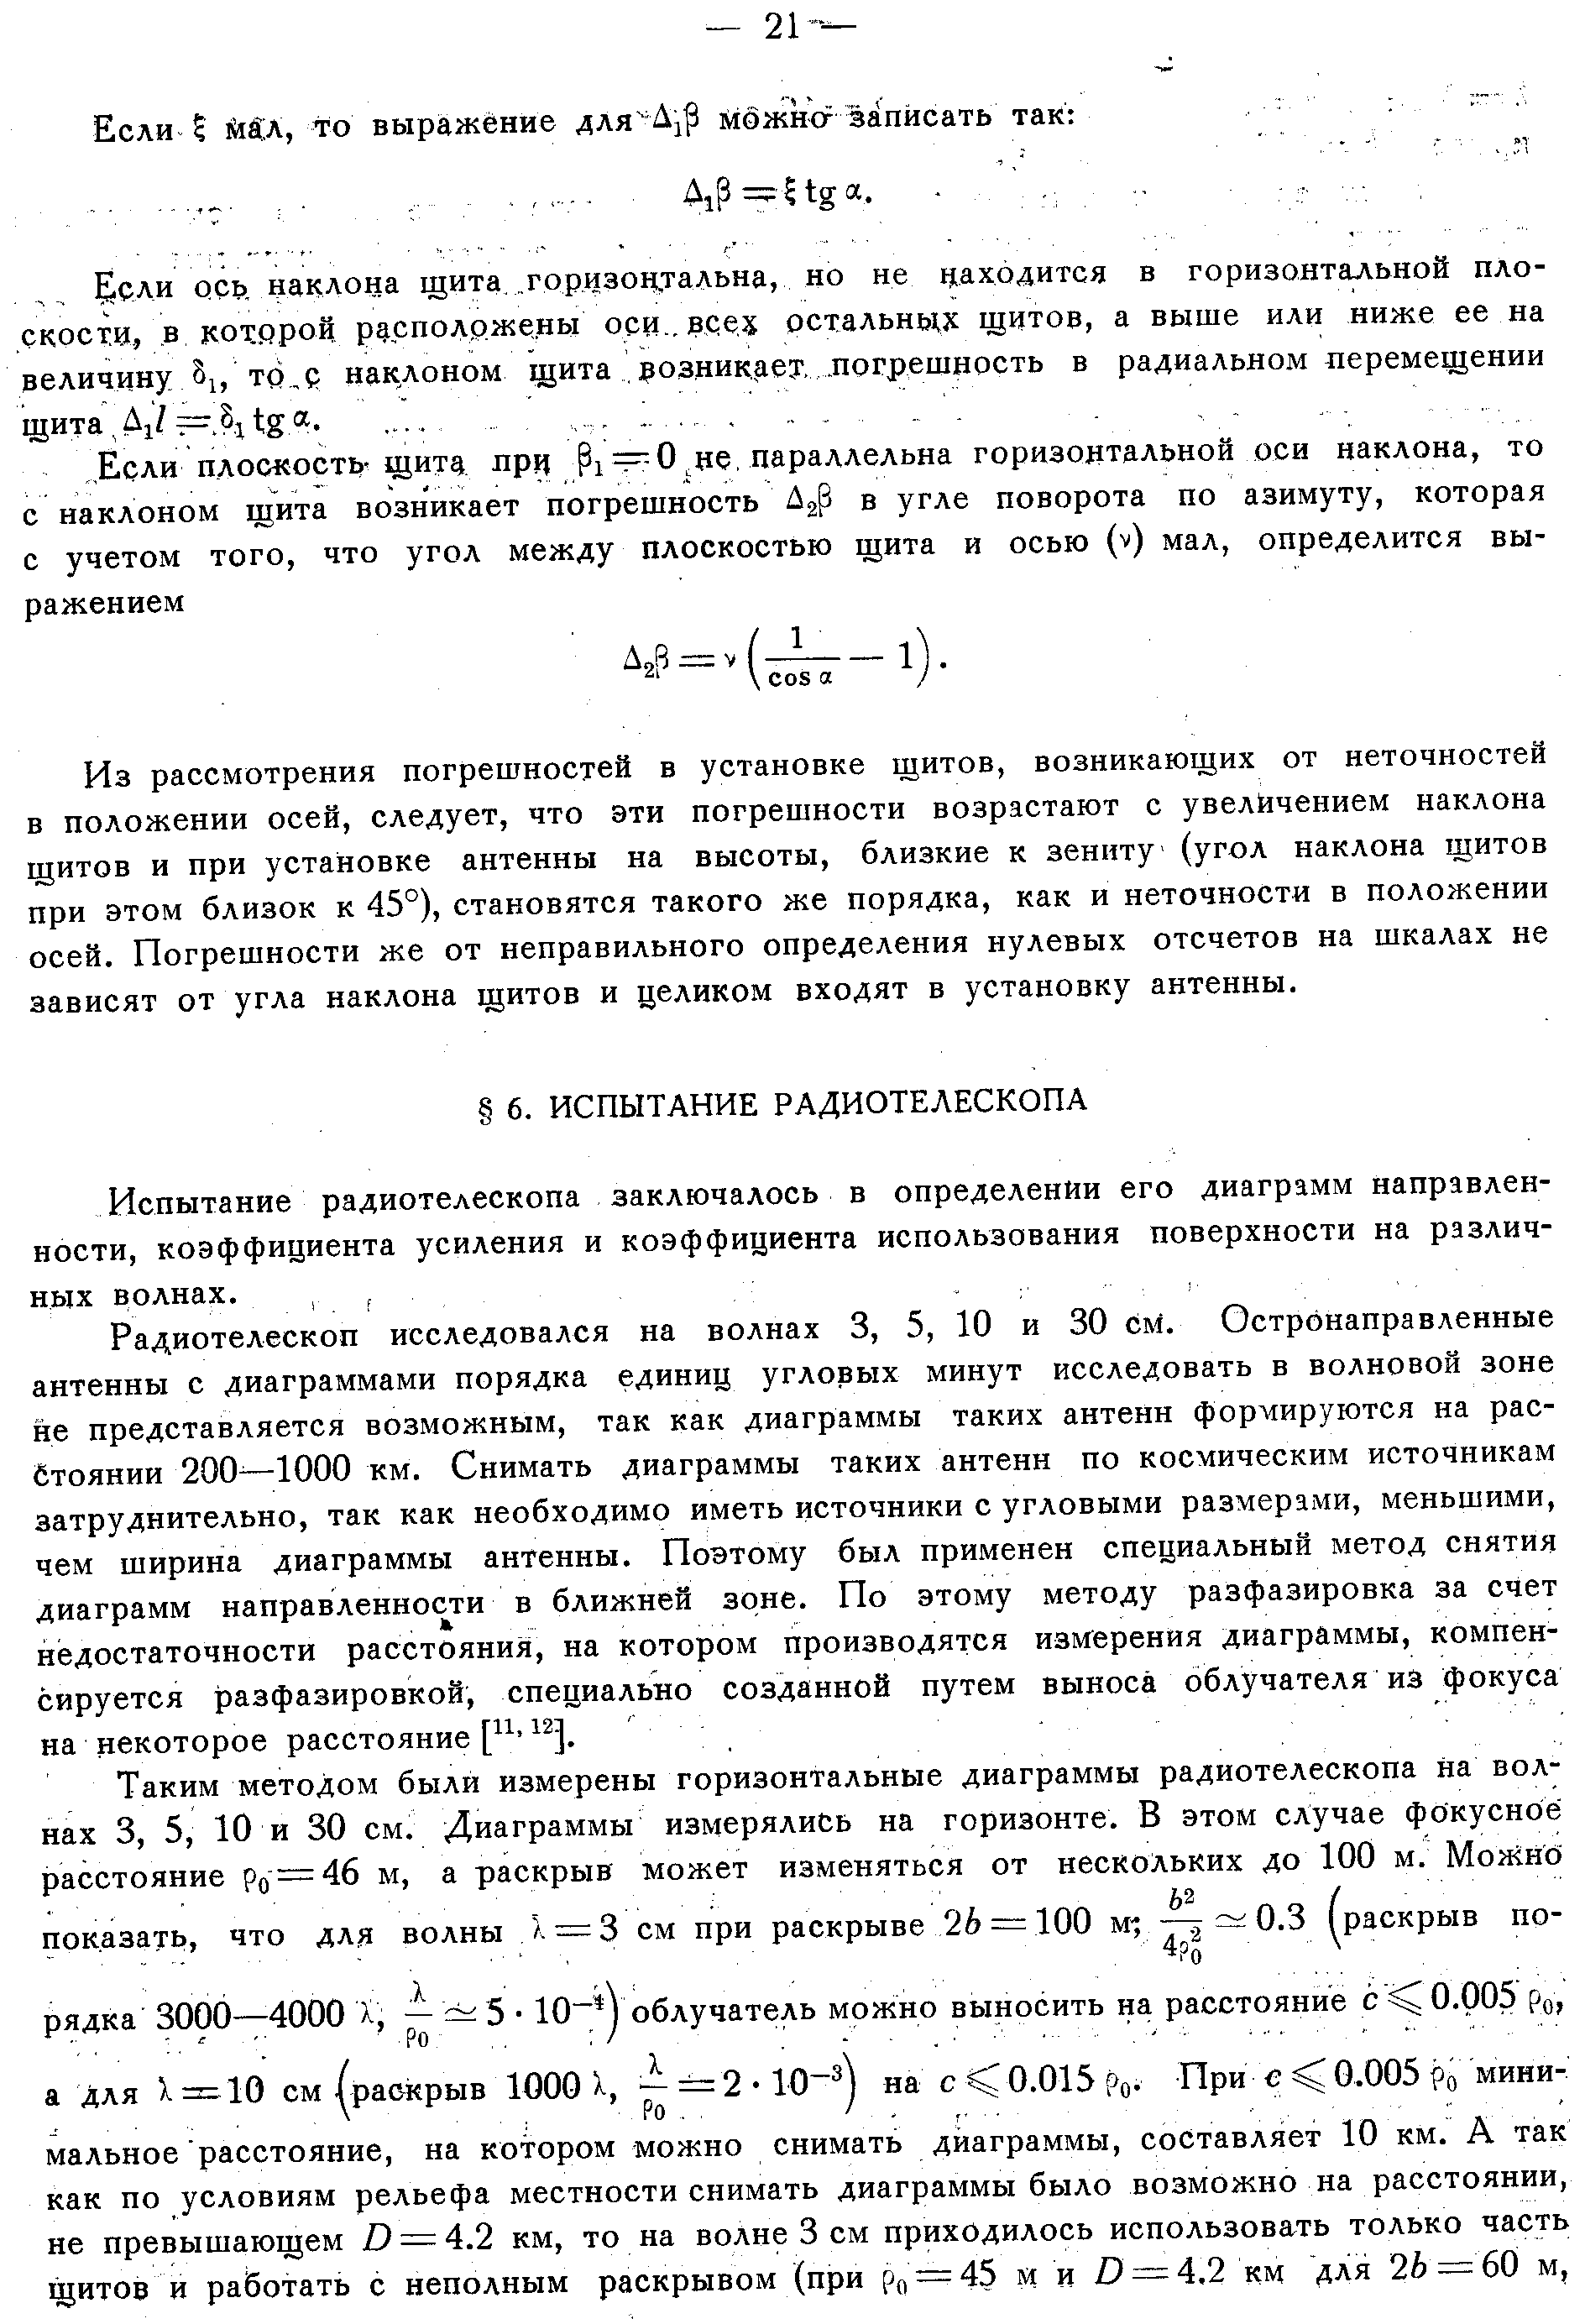 Хайкин С.Э. и др.,стр.18